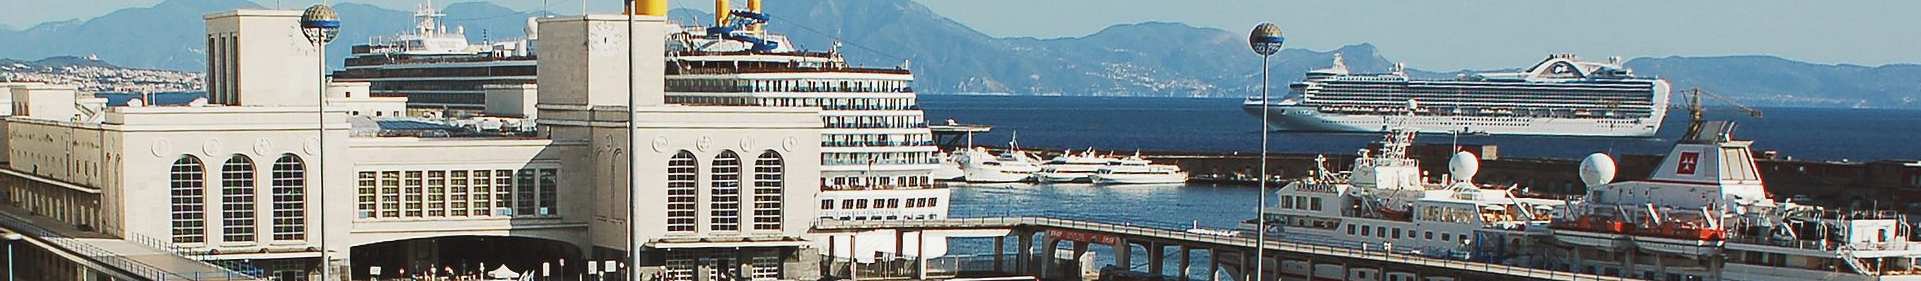 Port In Italy